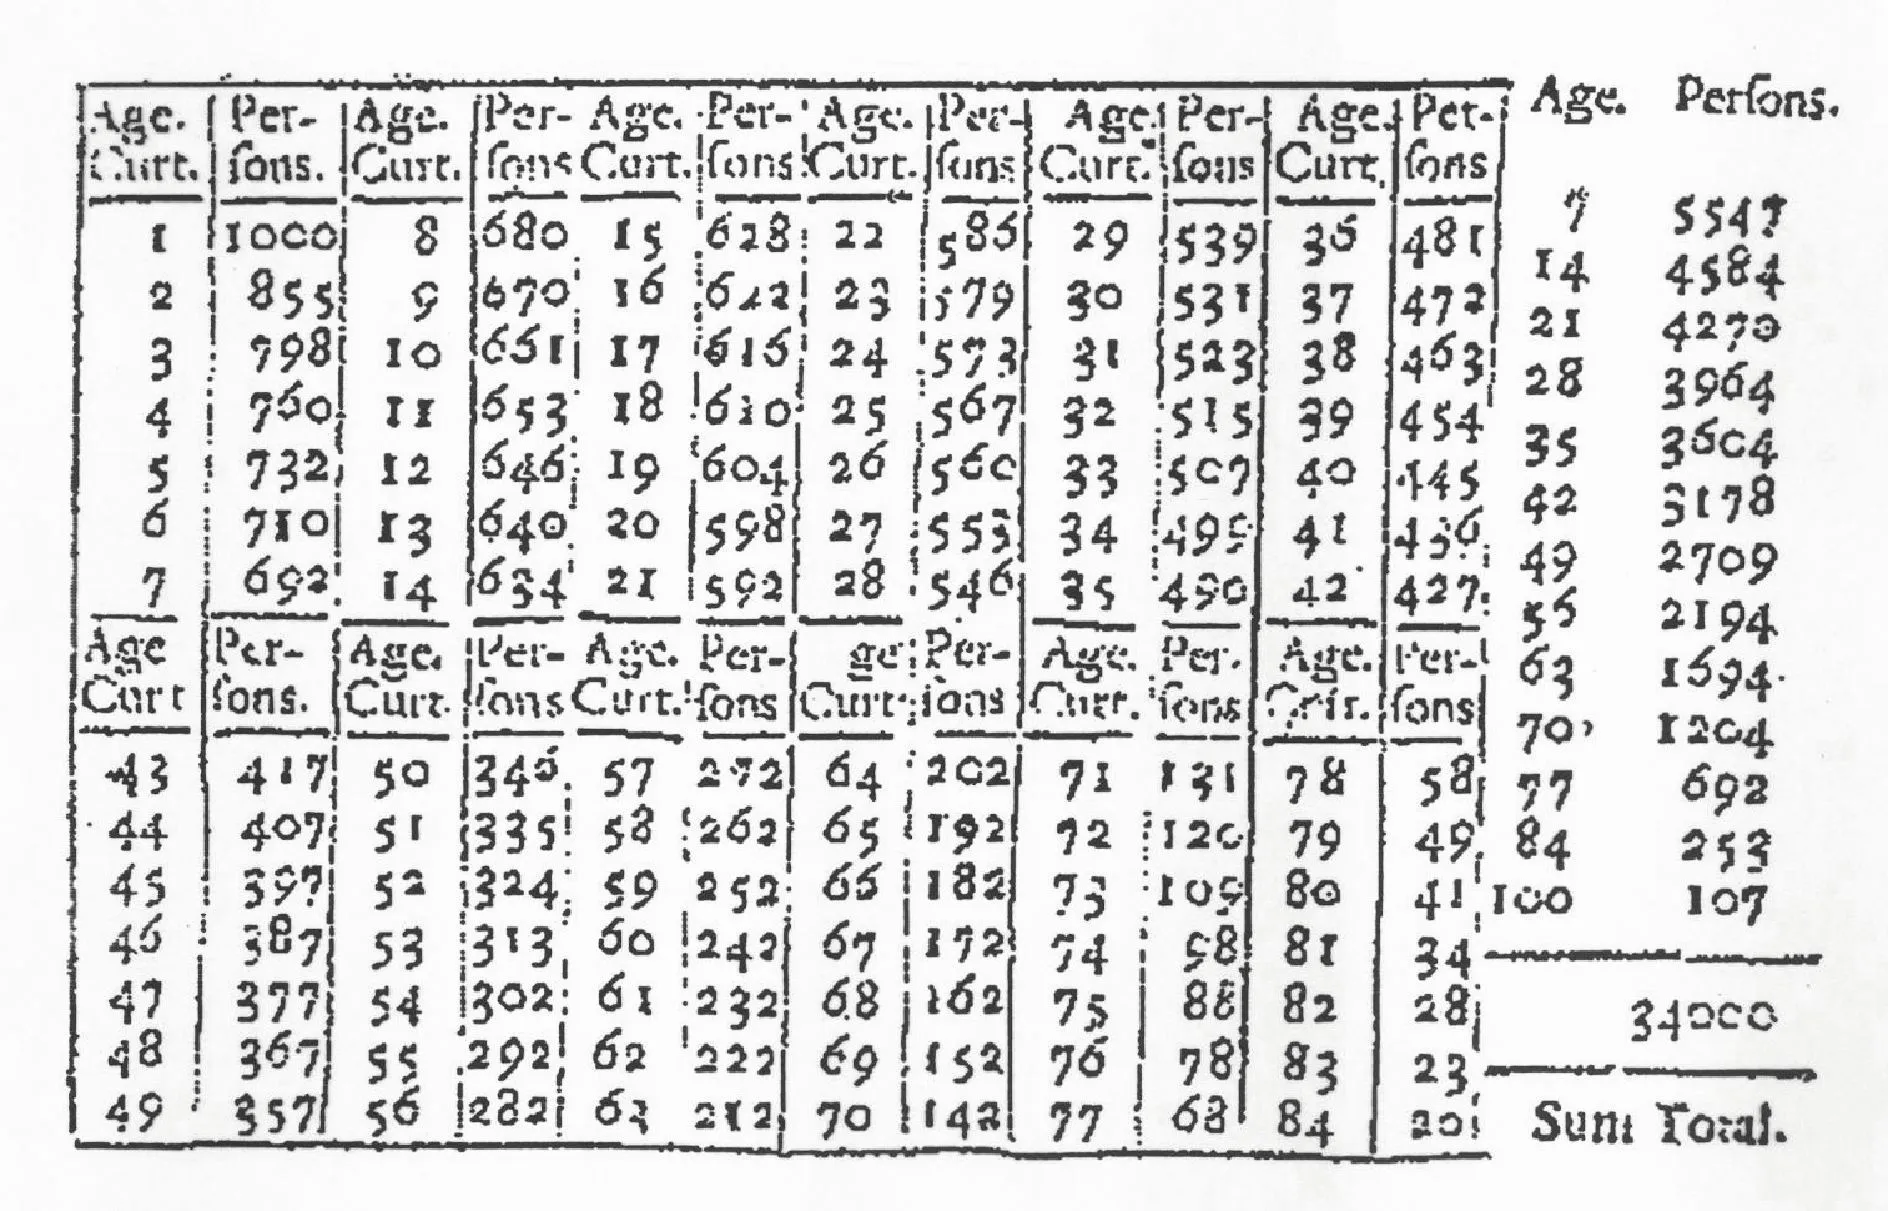 Table de mortalité établie par Edmond Halley, 1693